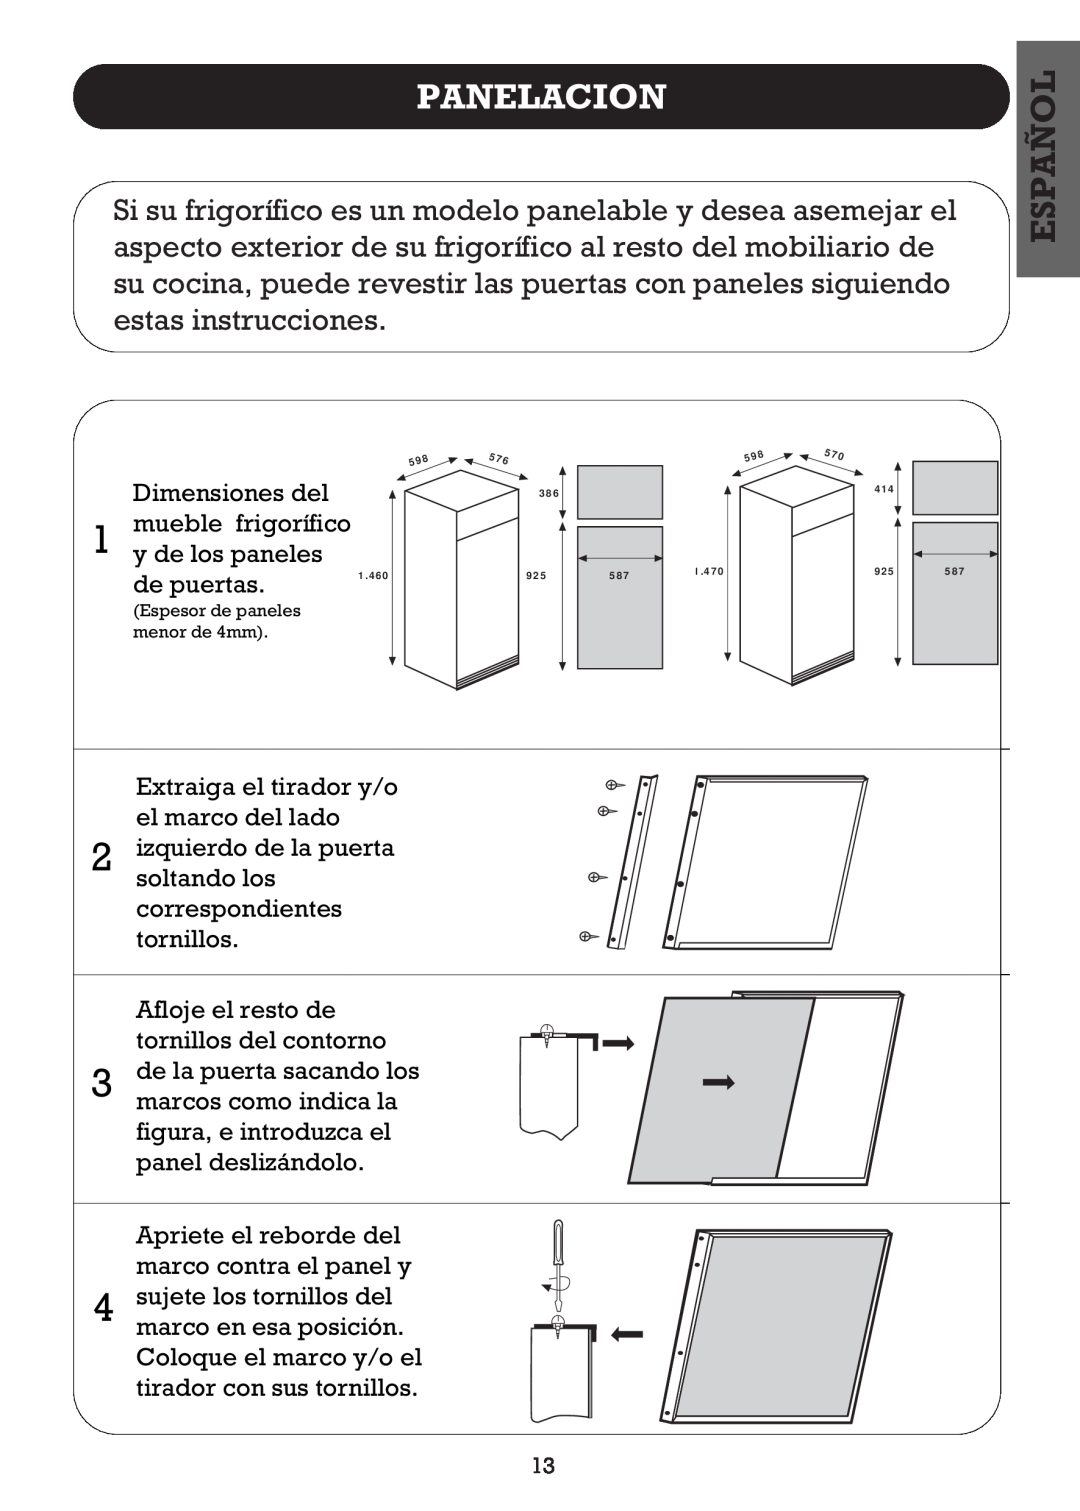 Smeg FD27R2, FD270B Panelacion, Español, Dimensiones del mueble frigorífico 1 y de los paneles, de puertas 